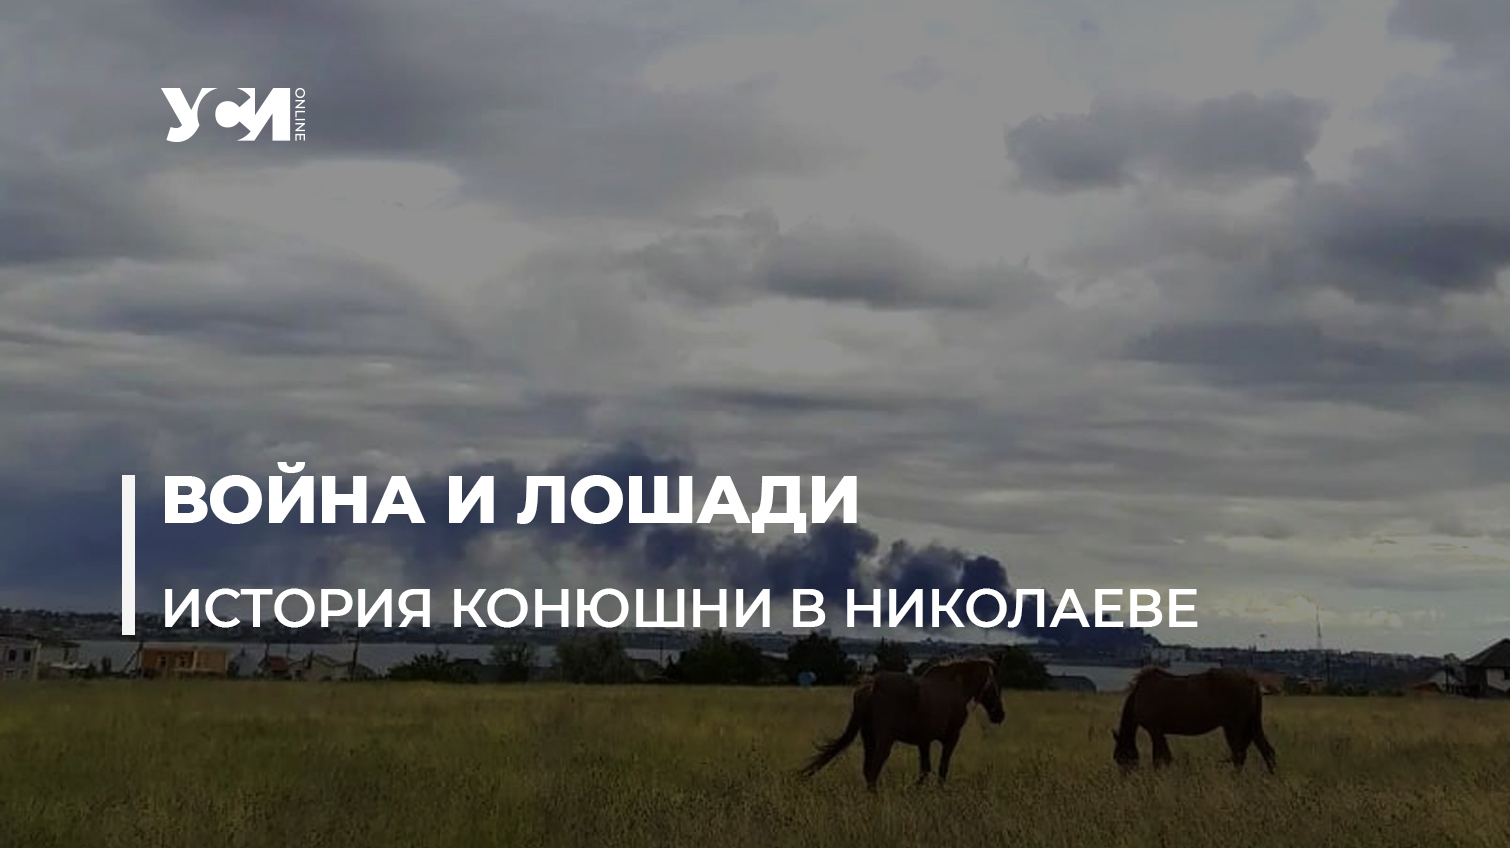 Конюшня в Николаеве: как справляются люди и животные под регулярными обстрелами «фото»